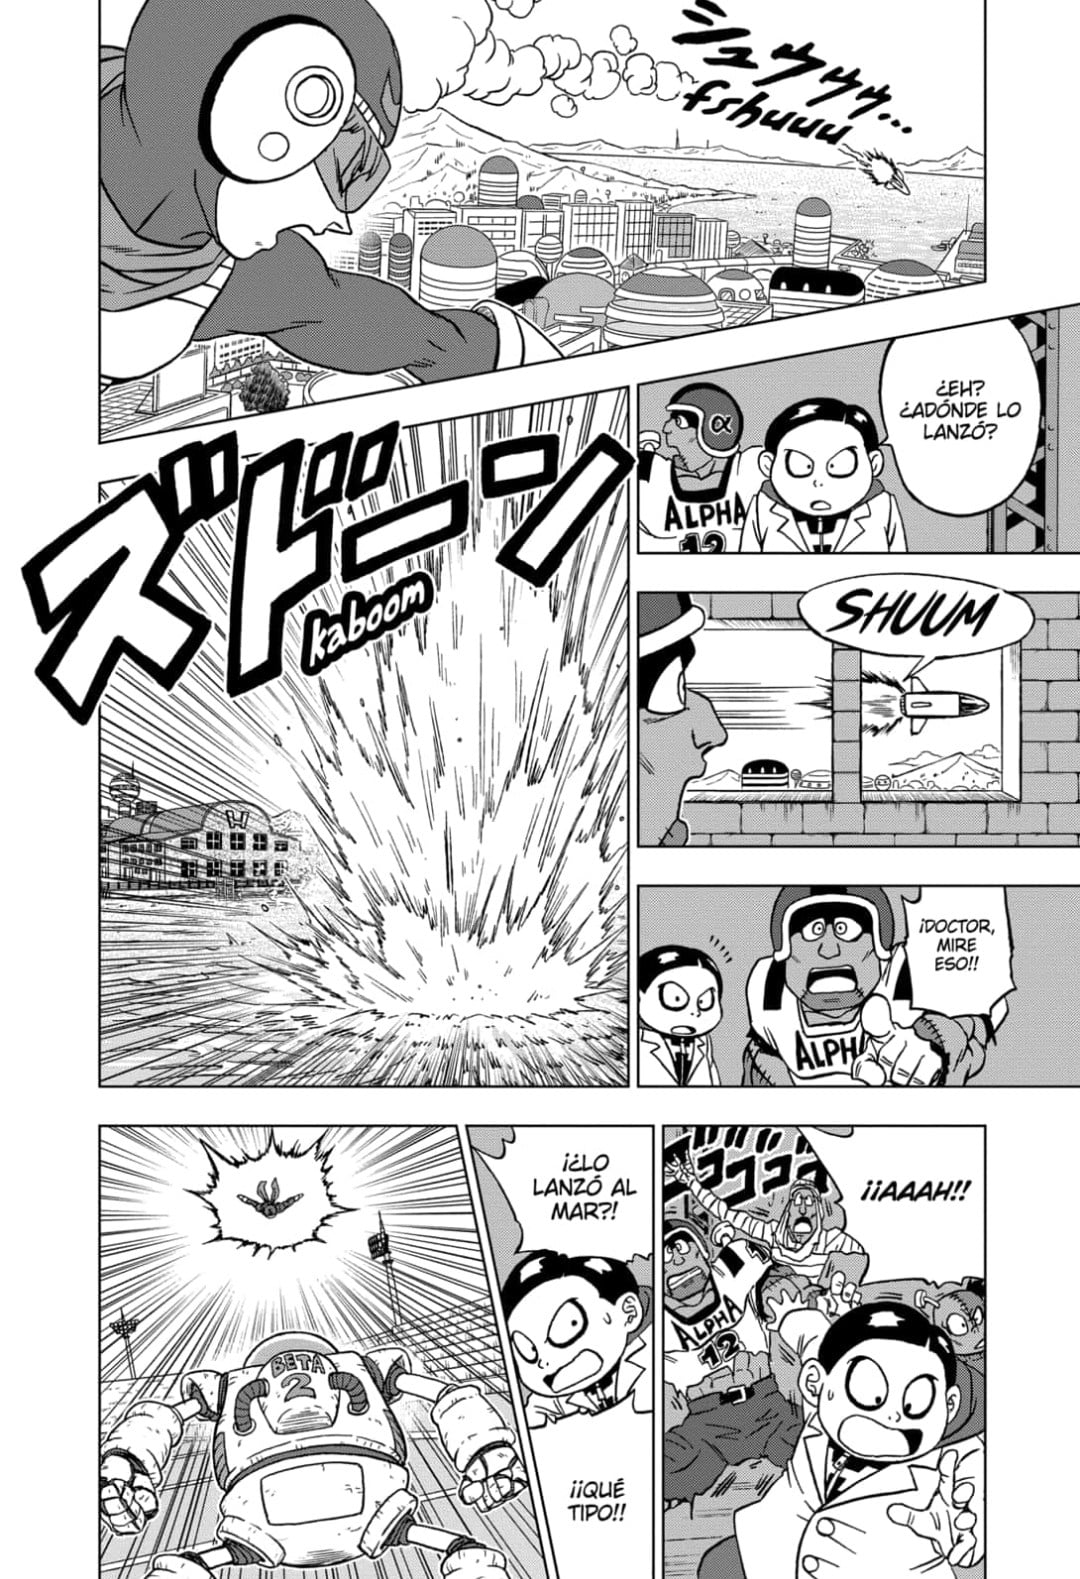 Sekai DB 世界 on X: Manga Dragon Ball Super Capítulo 89 - Borradores  oficiales (Traducción al Español) 🔥 Título: Un rival aparece. *El  capítulo completo será lanzado el próximo 19 de Enero